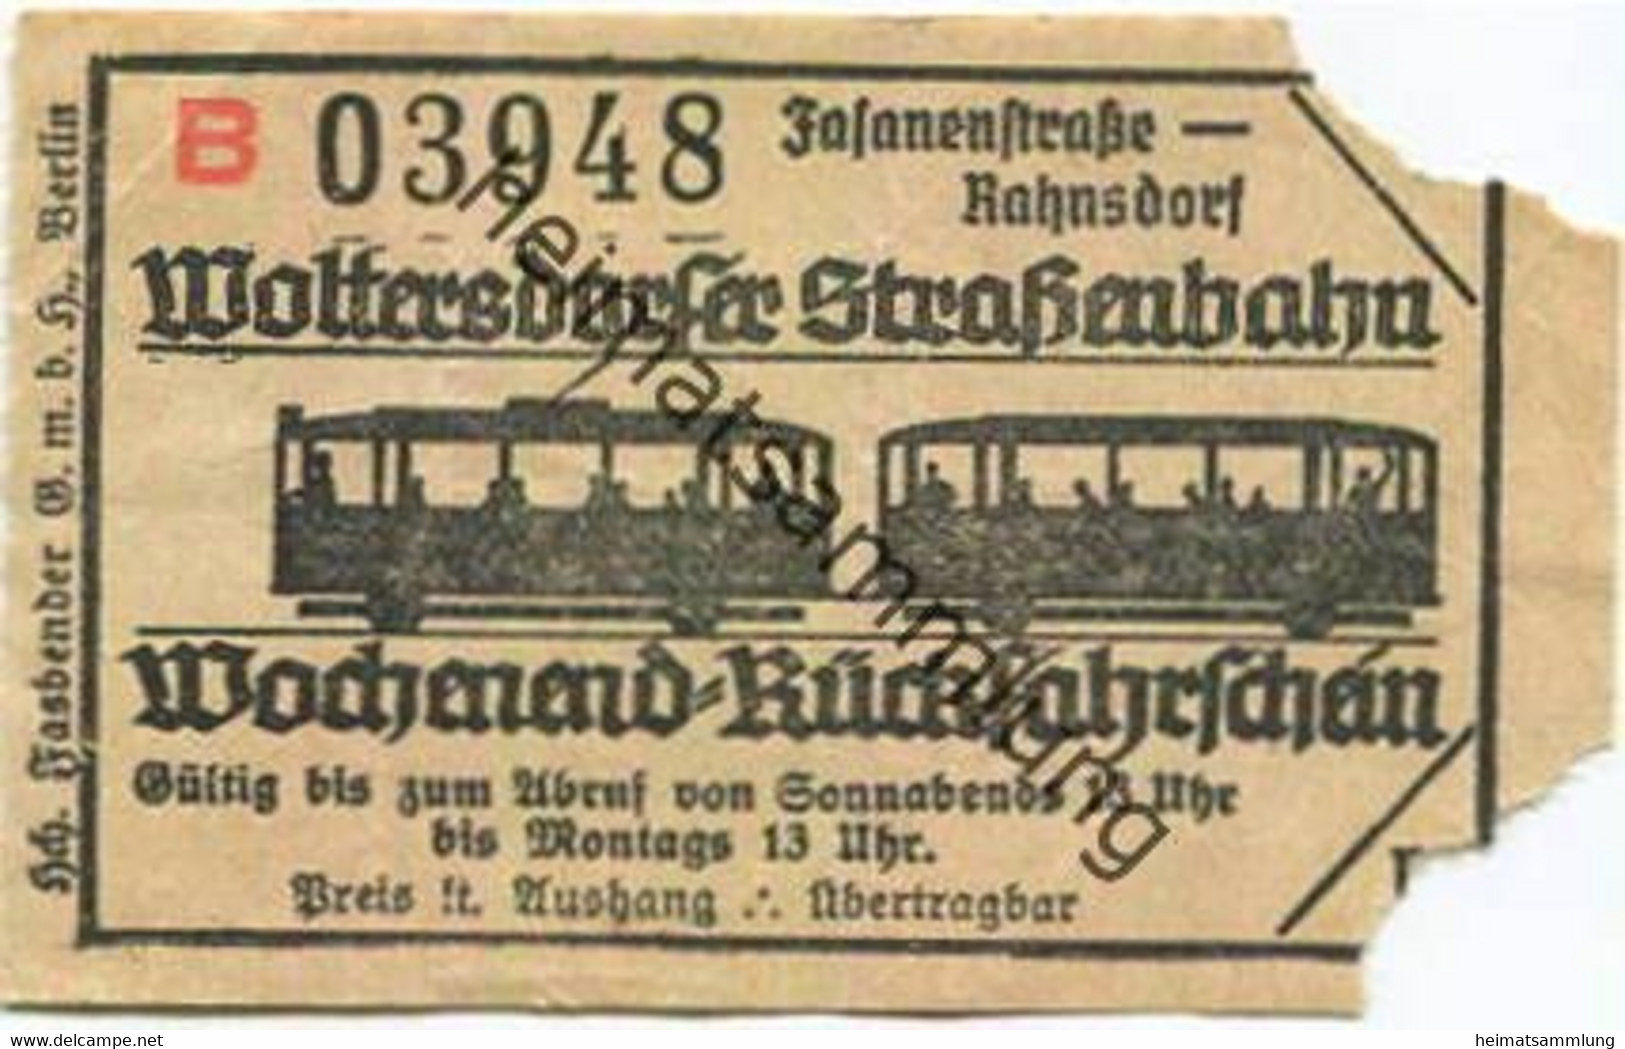 Deutschland - Woltersdorf - Woltersdorfer Strassenbahn - Wochenend-Rückfahrschein - Fasanenstrasse Rahnsdorf - Europe